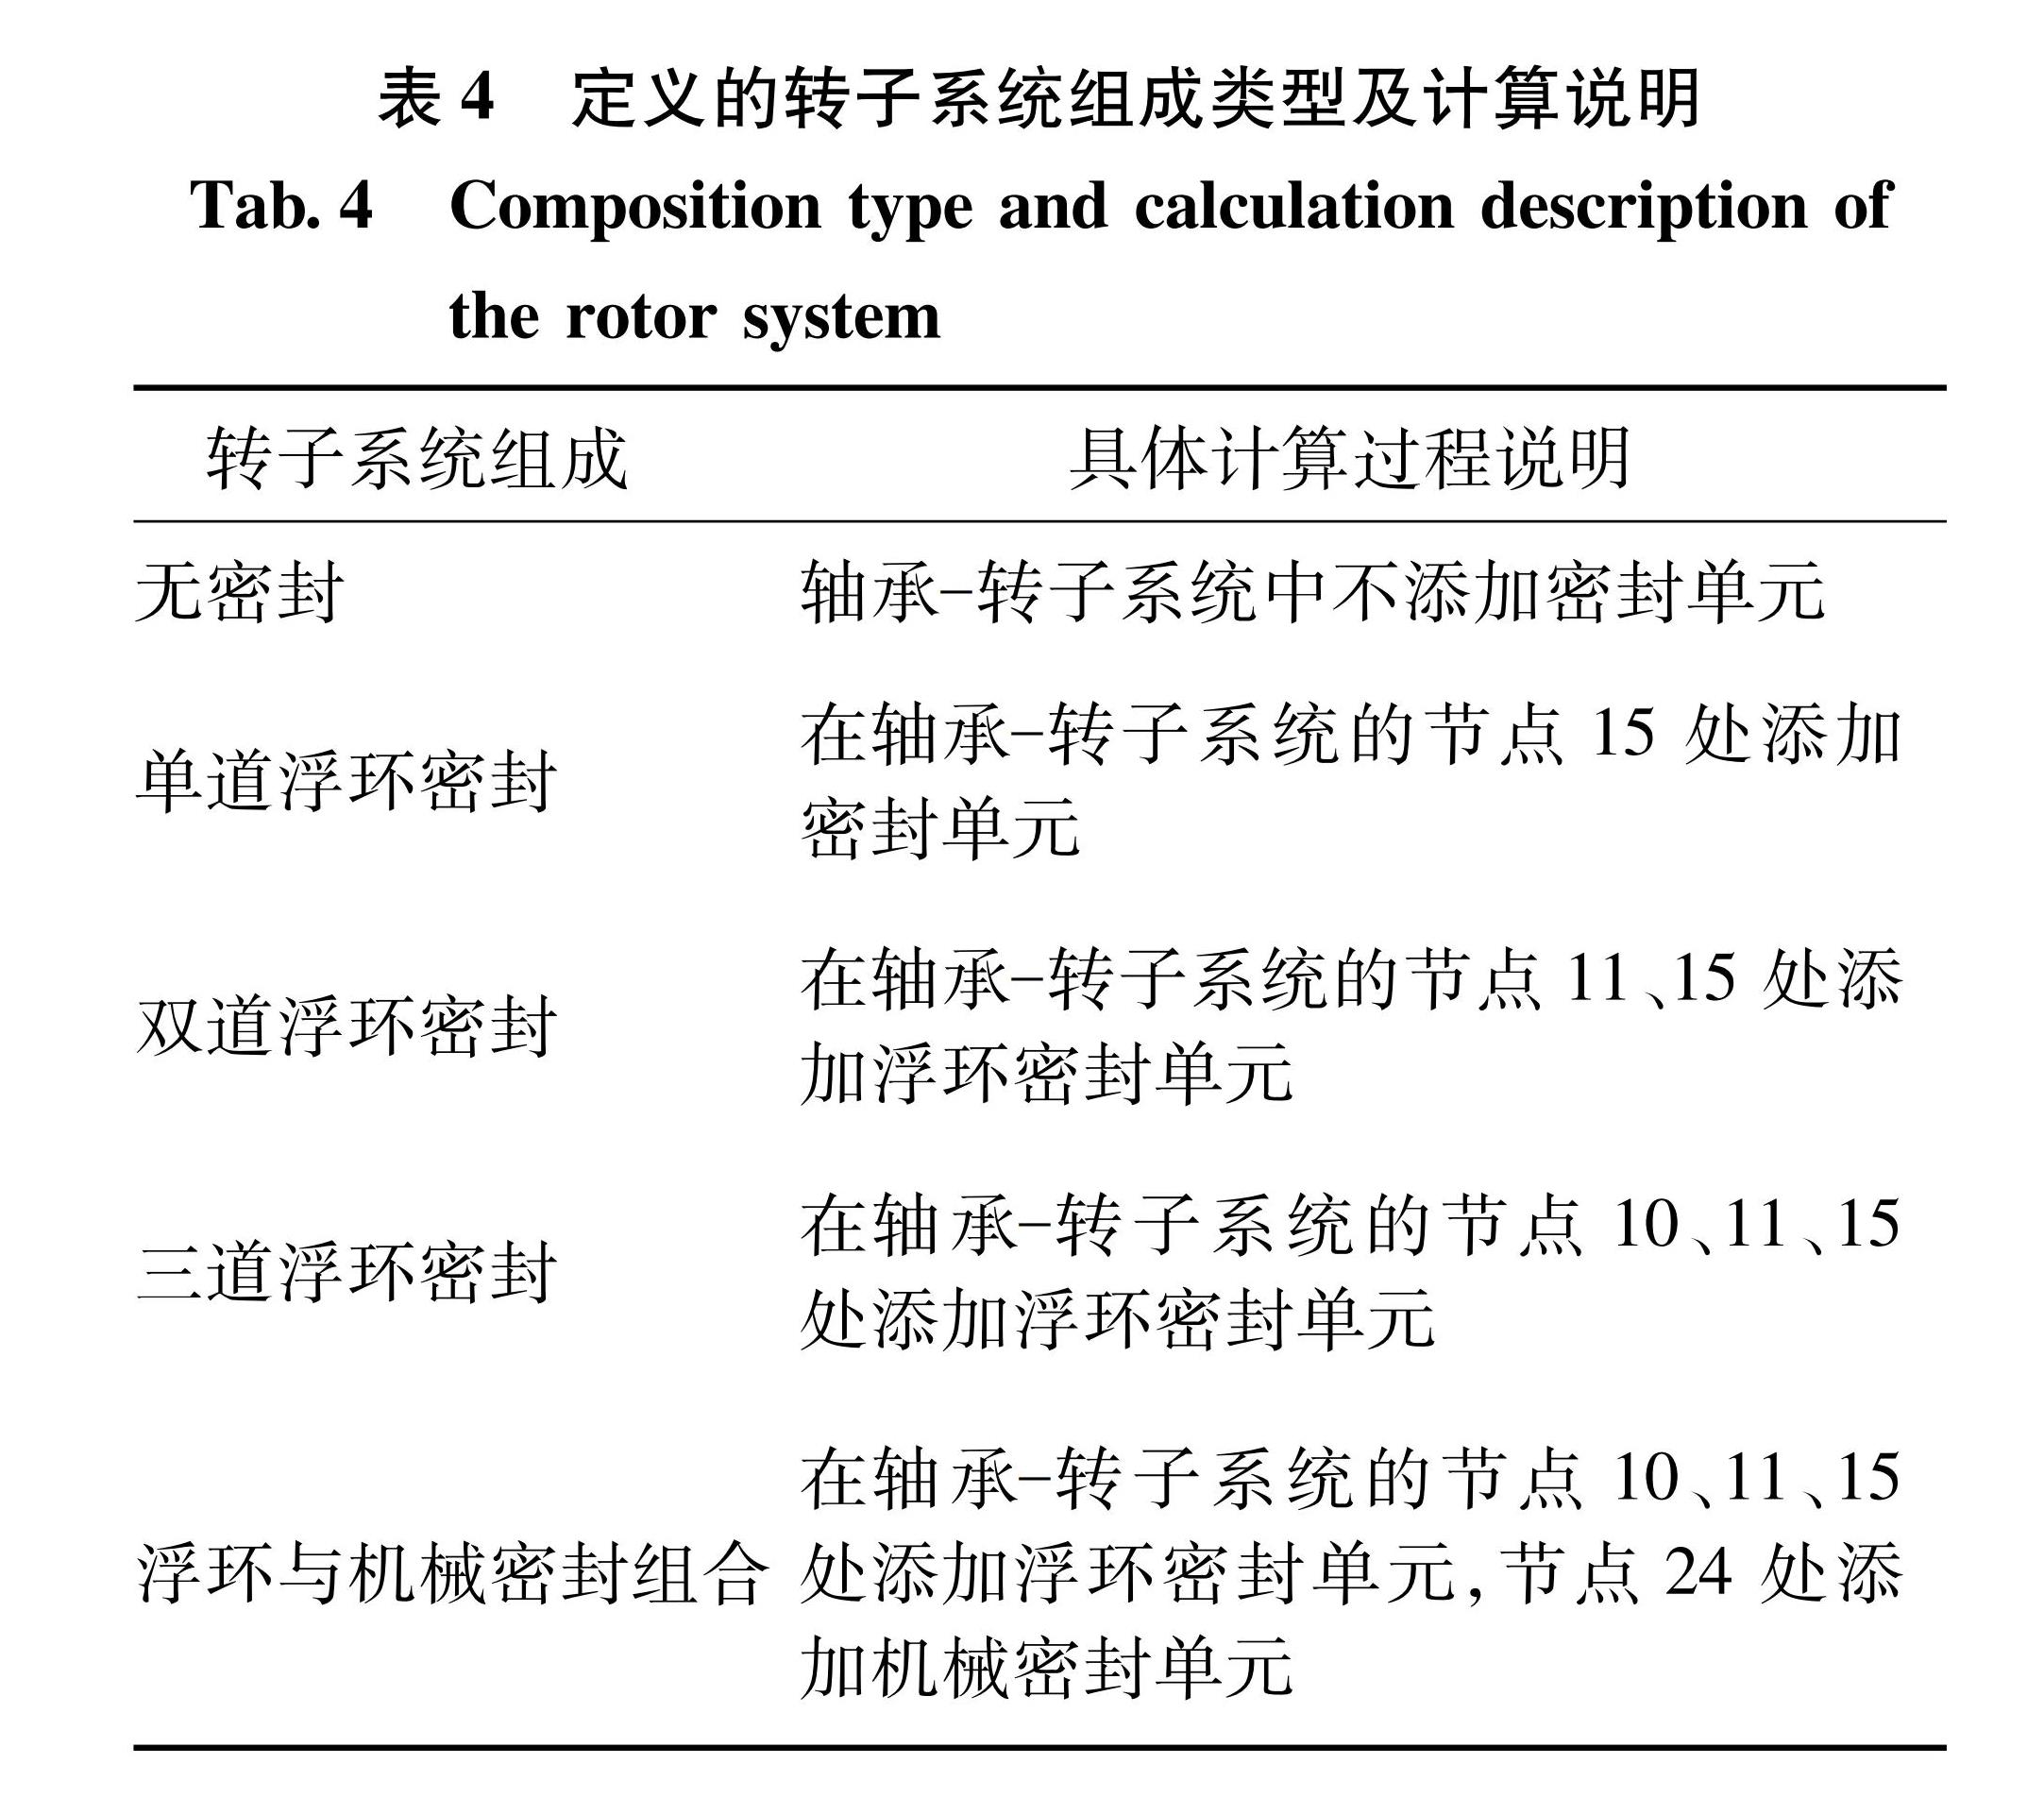 表4 定义的转子系统组成类型及计算说明<br/>Tab.4 Composition type and calculation description of the rotor system